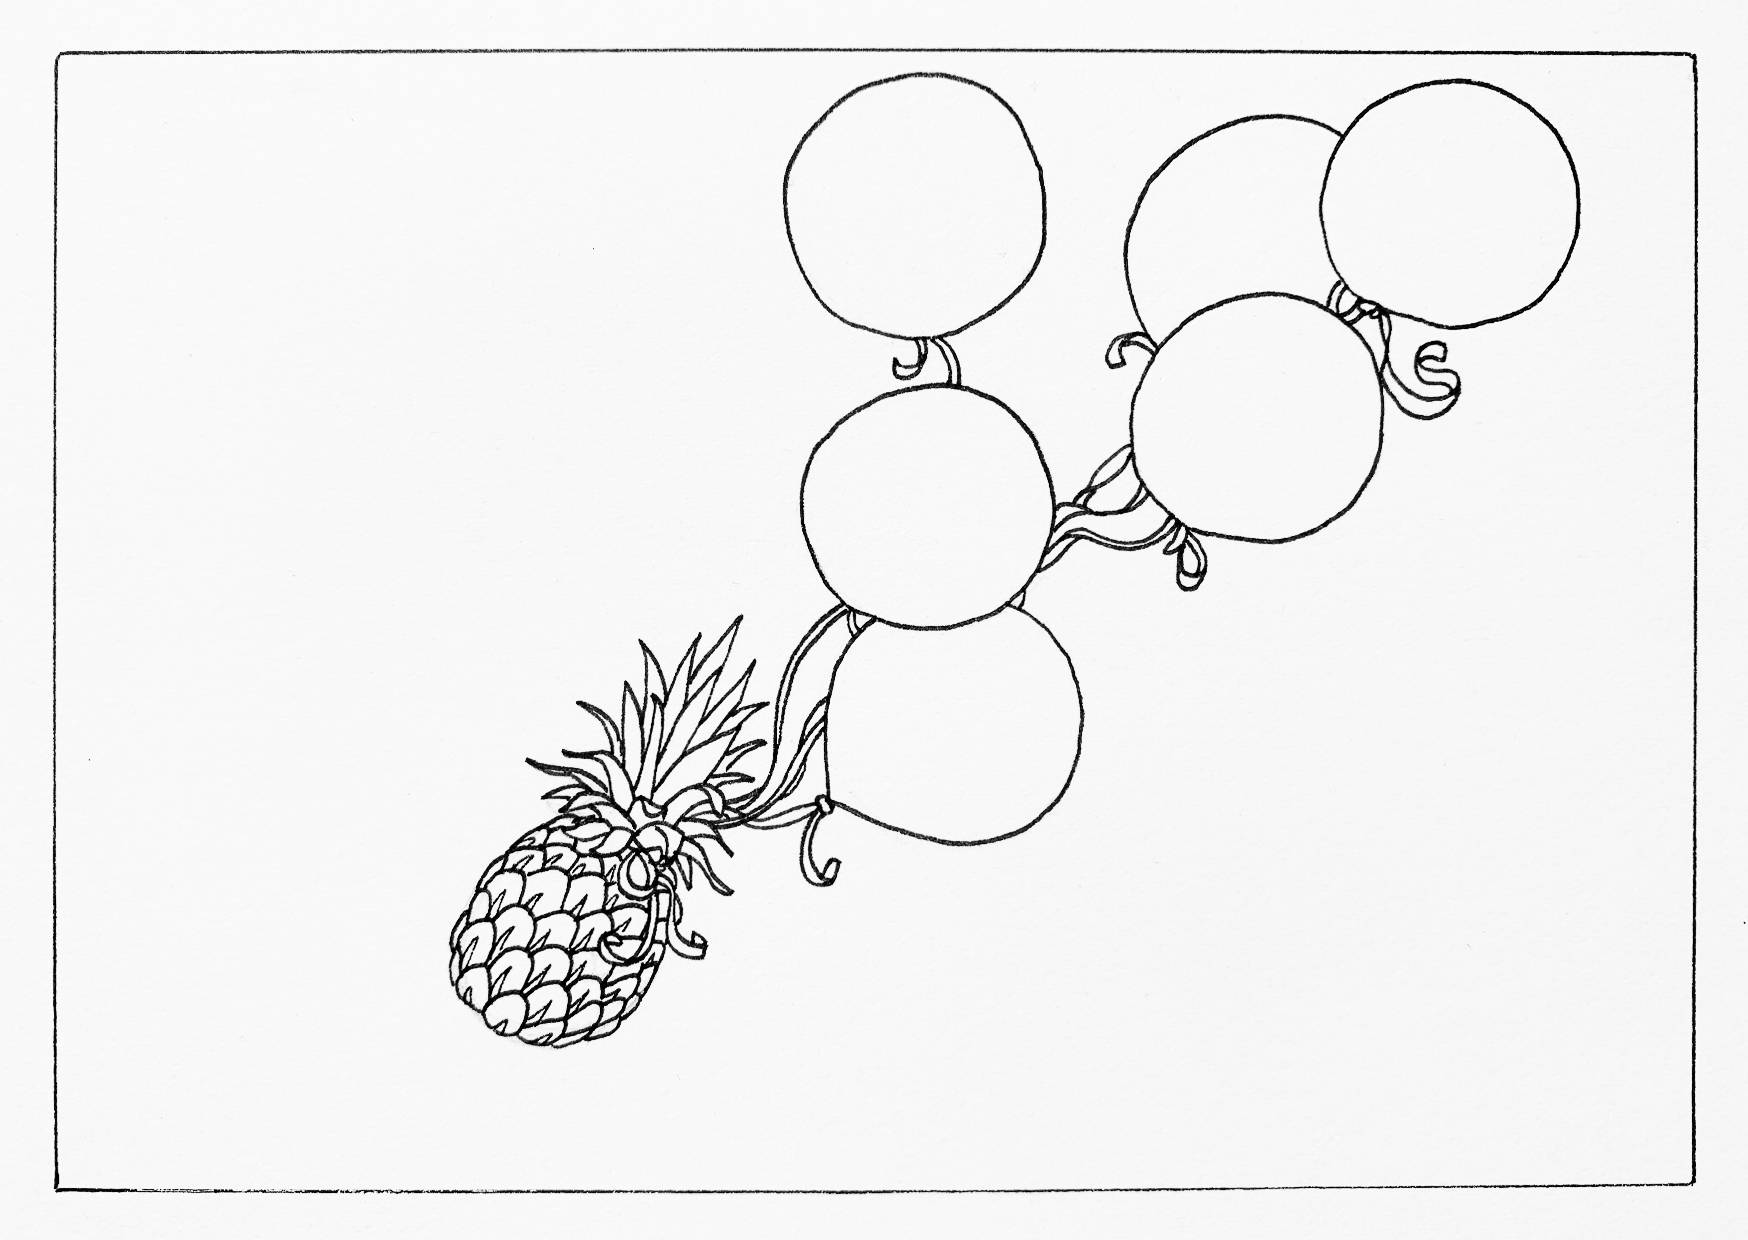 Pineapple Ballons.jpg